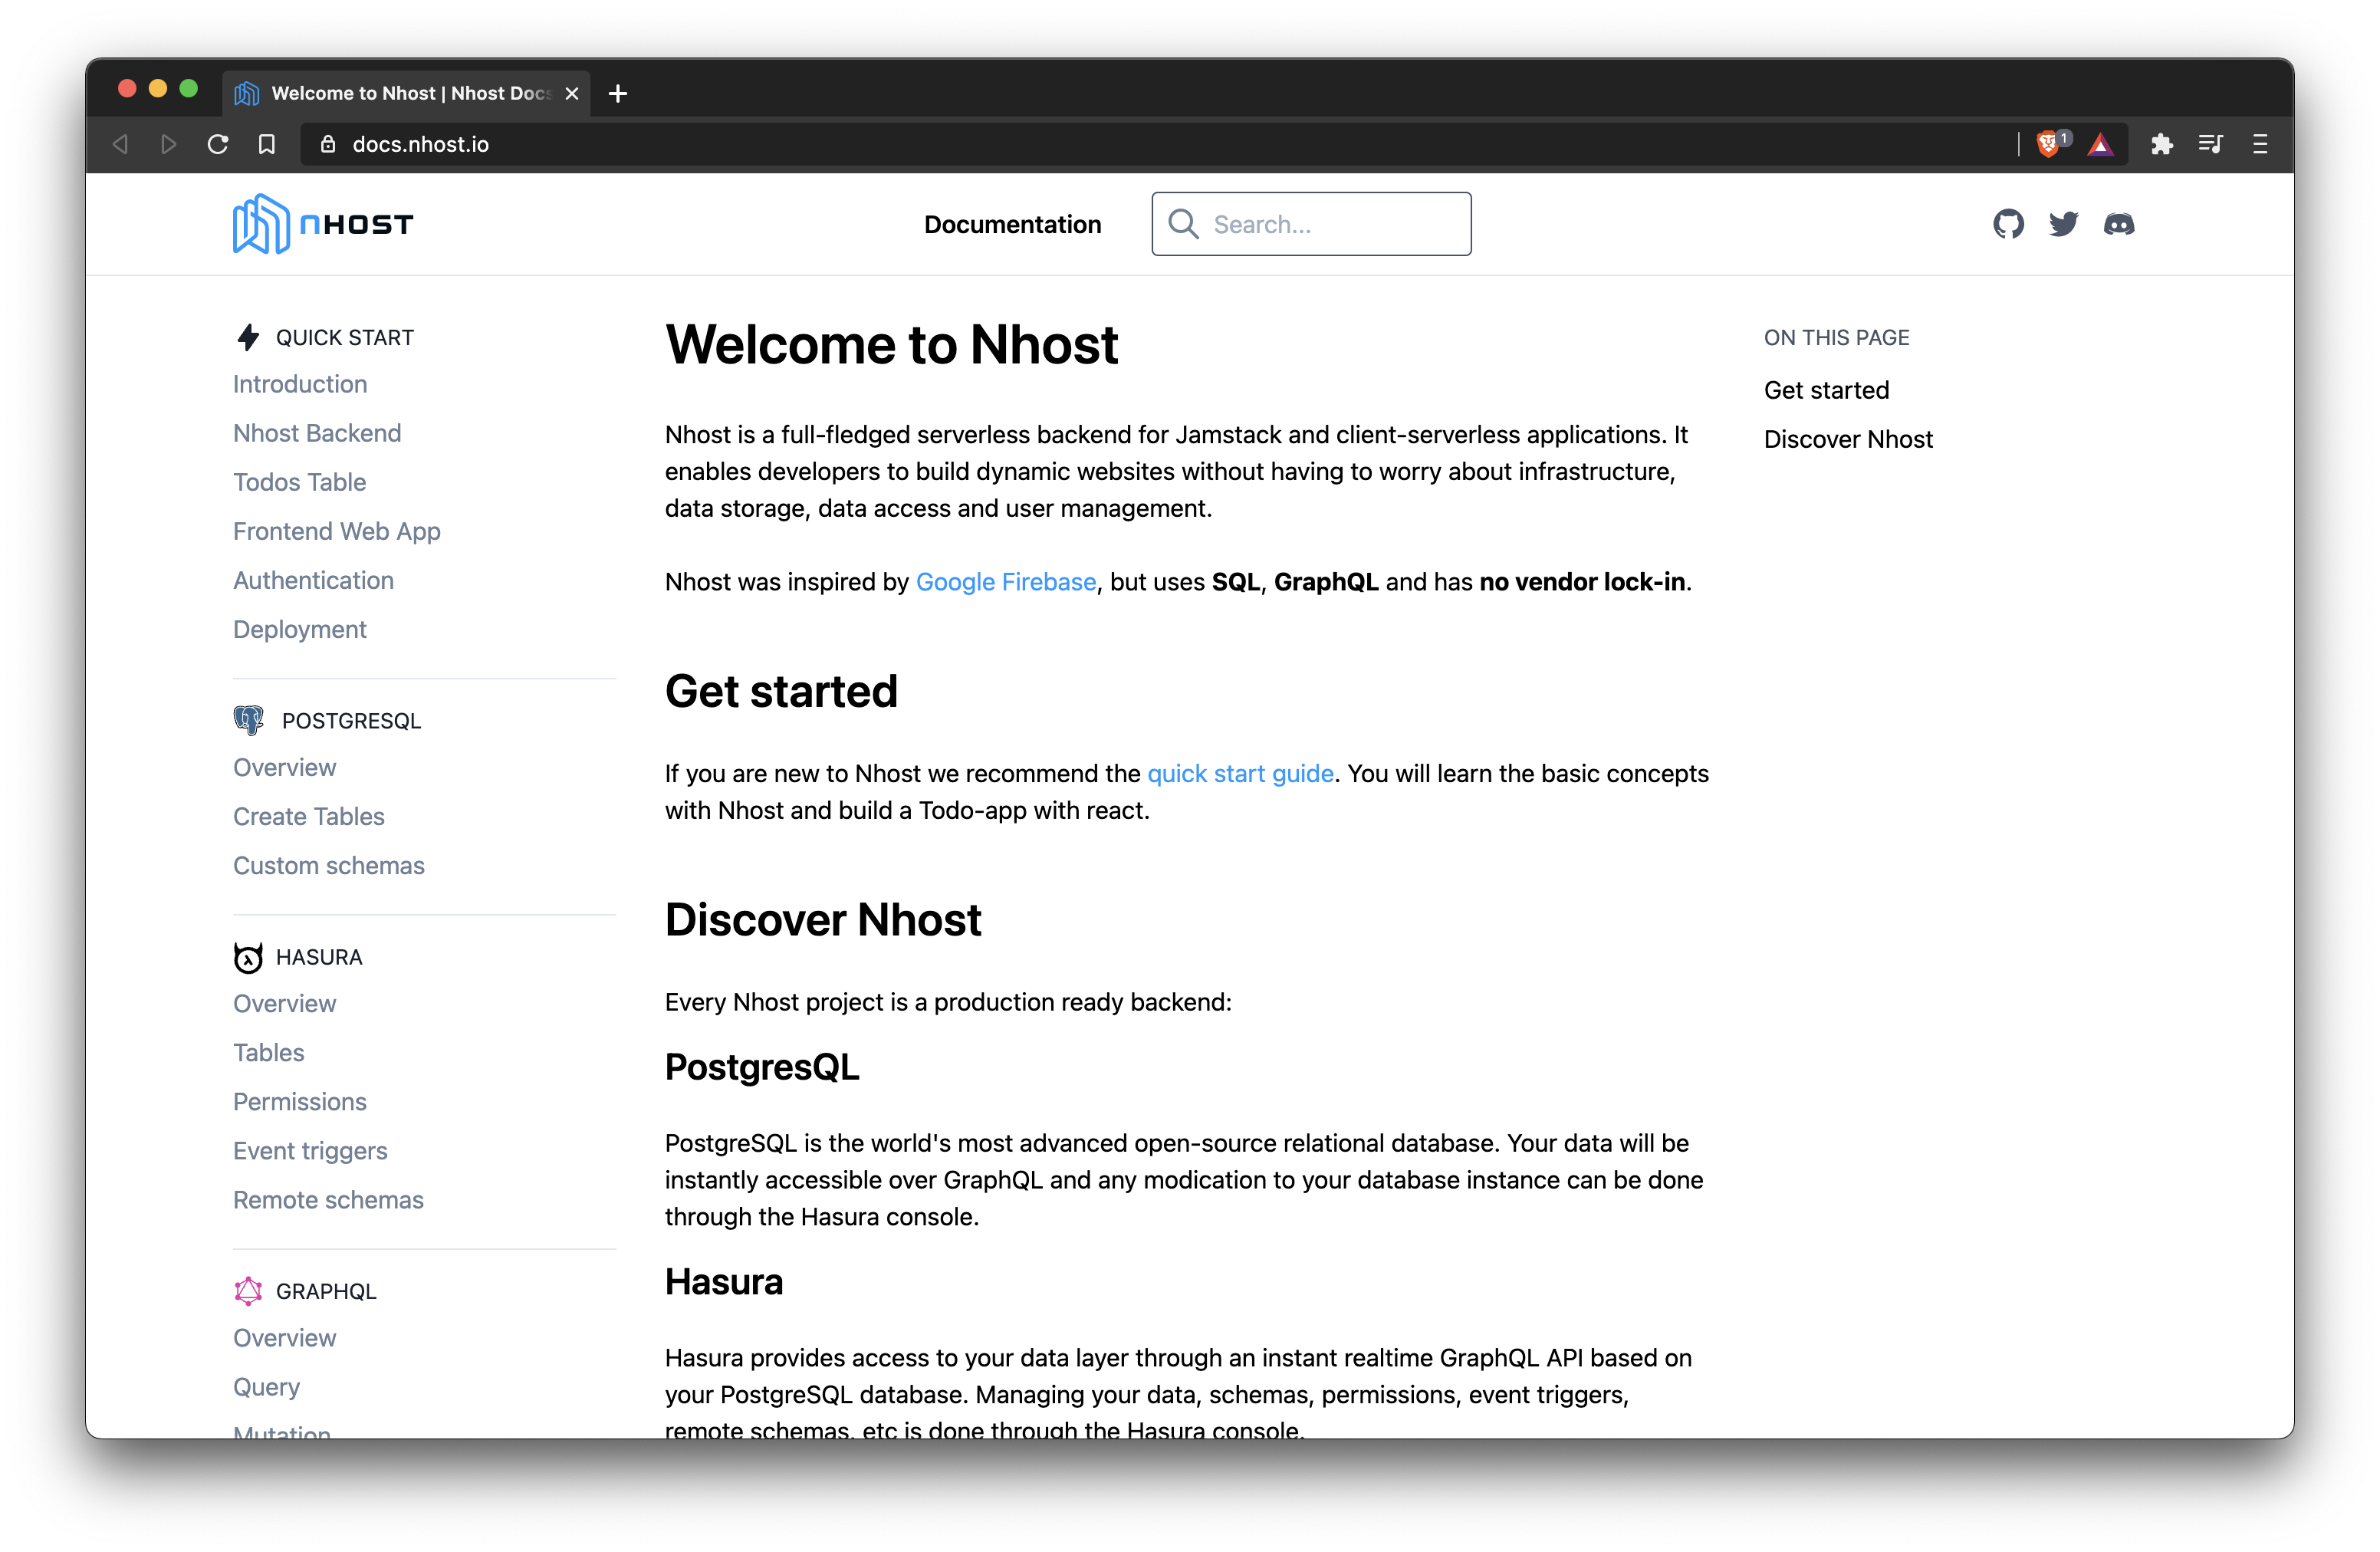 Nhost Documentation